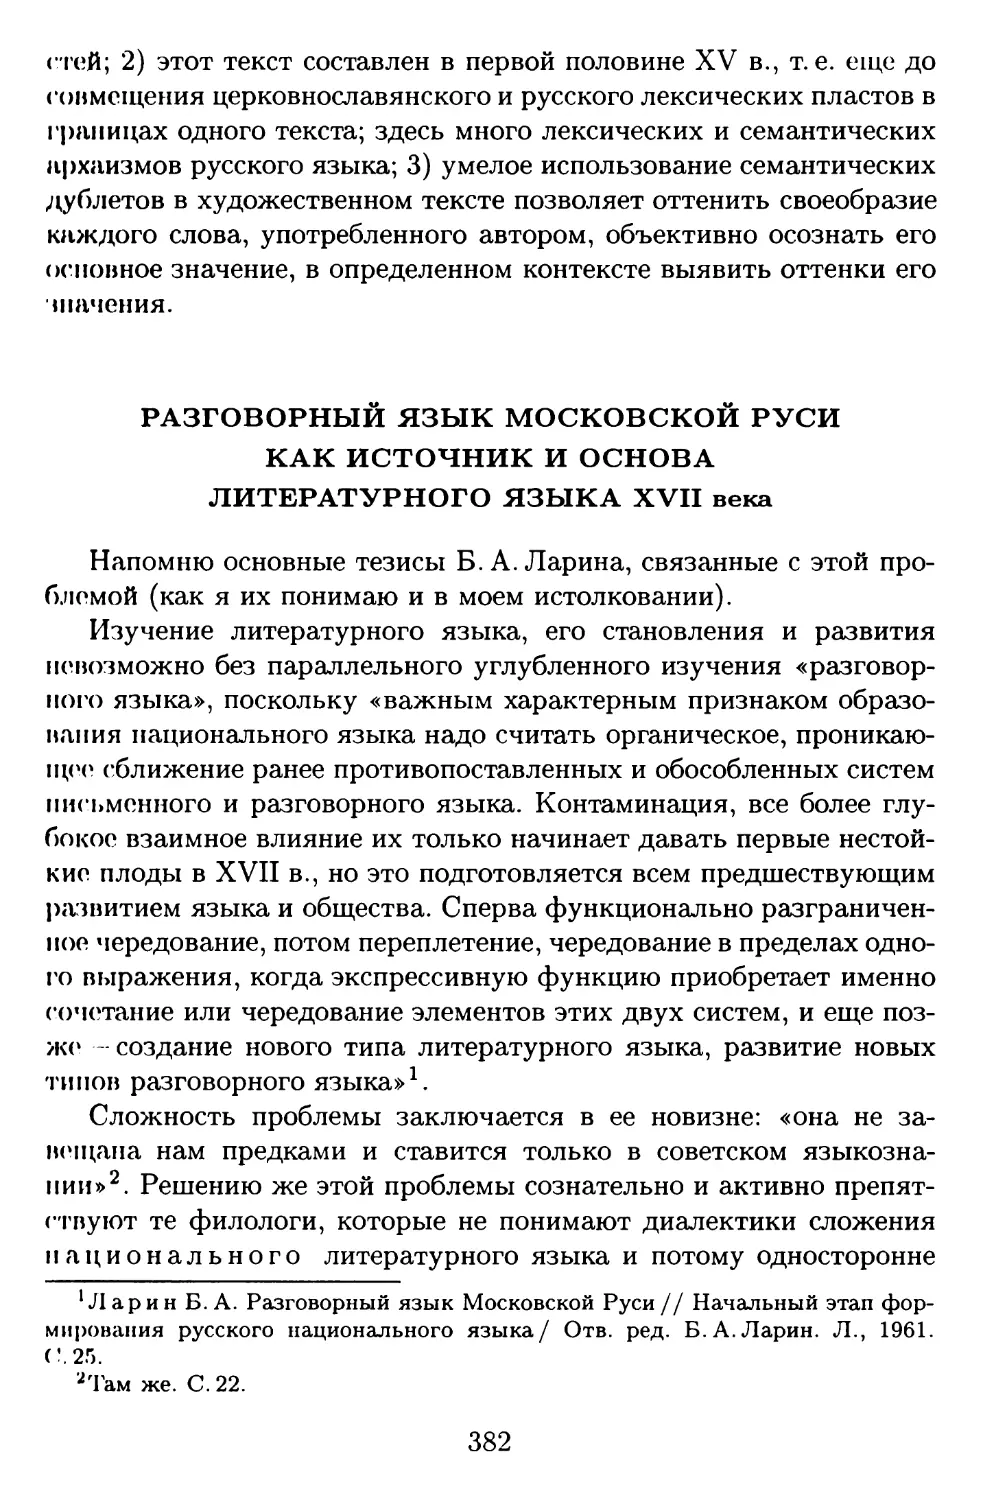 Разговорный язык Московской Руси как источник и основа литературного языка XVII века